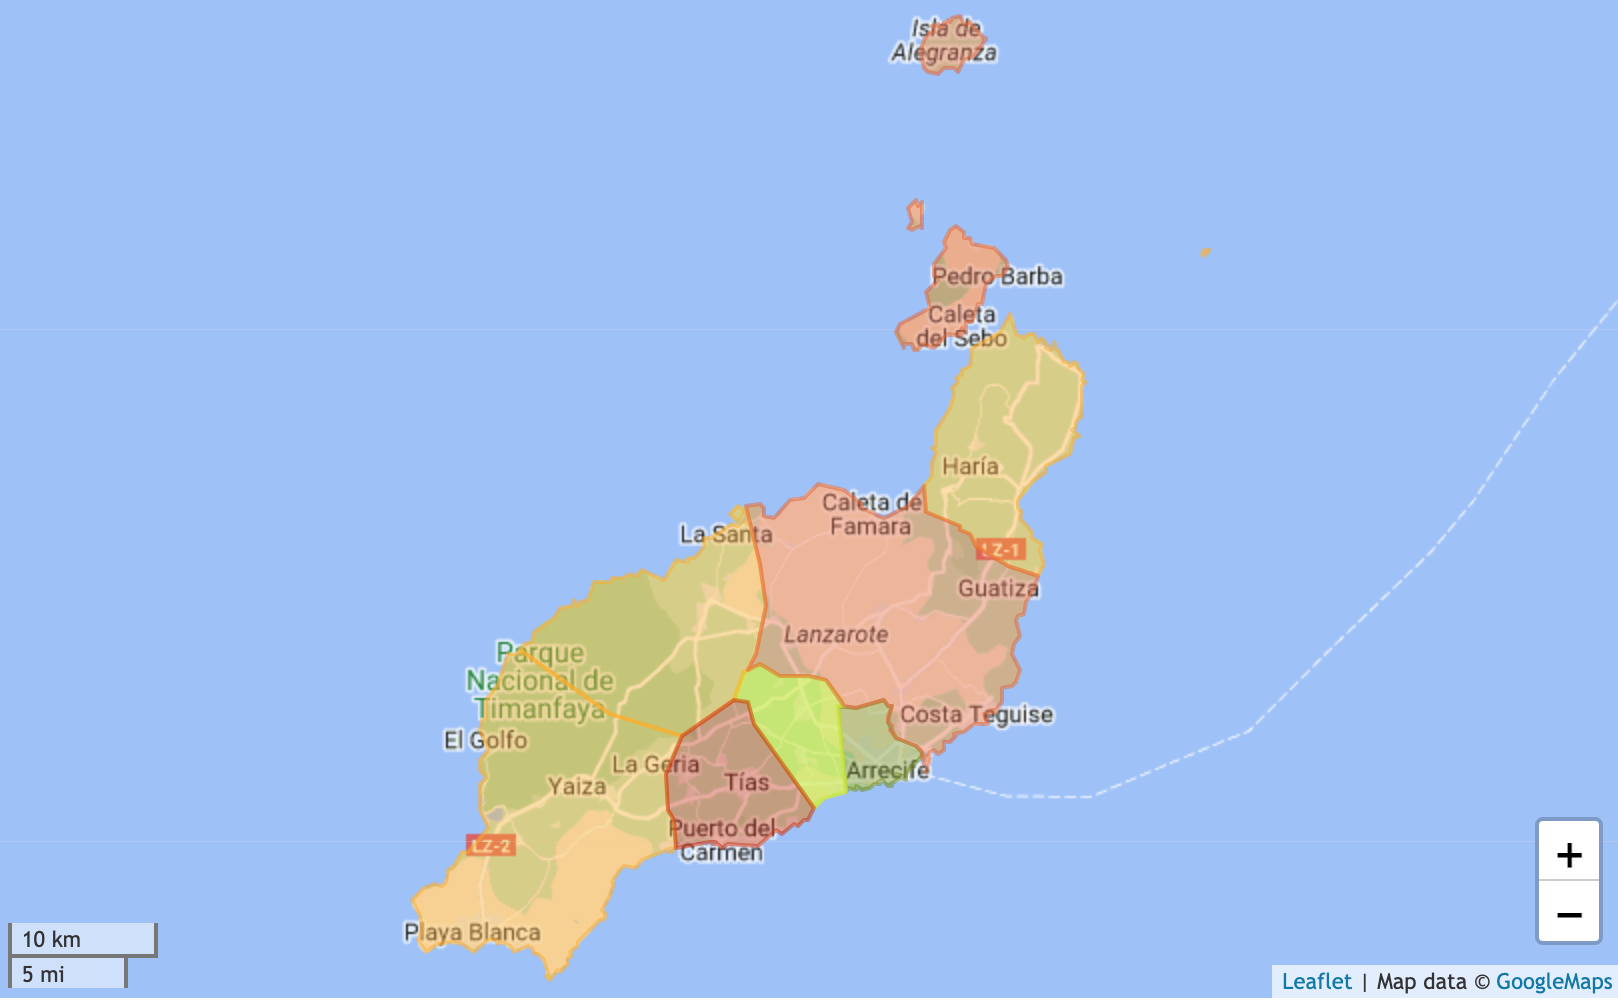 Mappa di Lanzarote con prezzi delle case codificati per colore